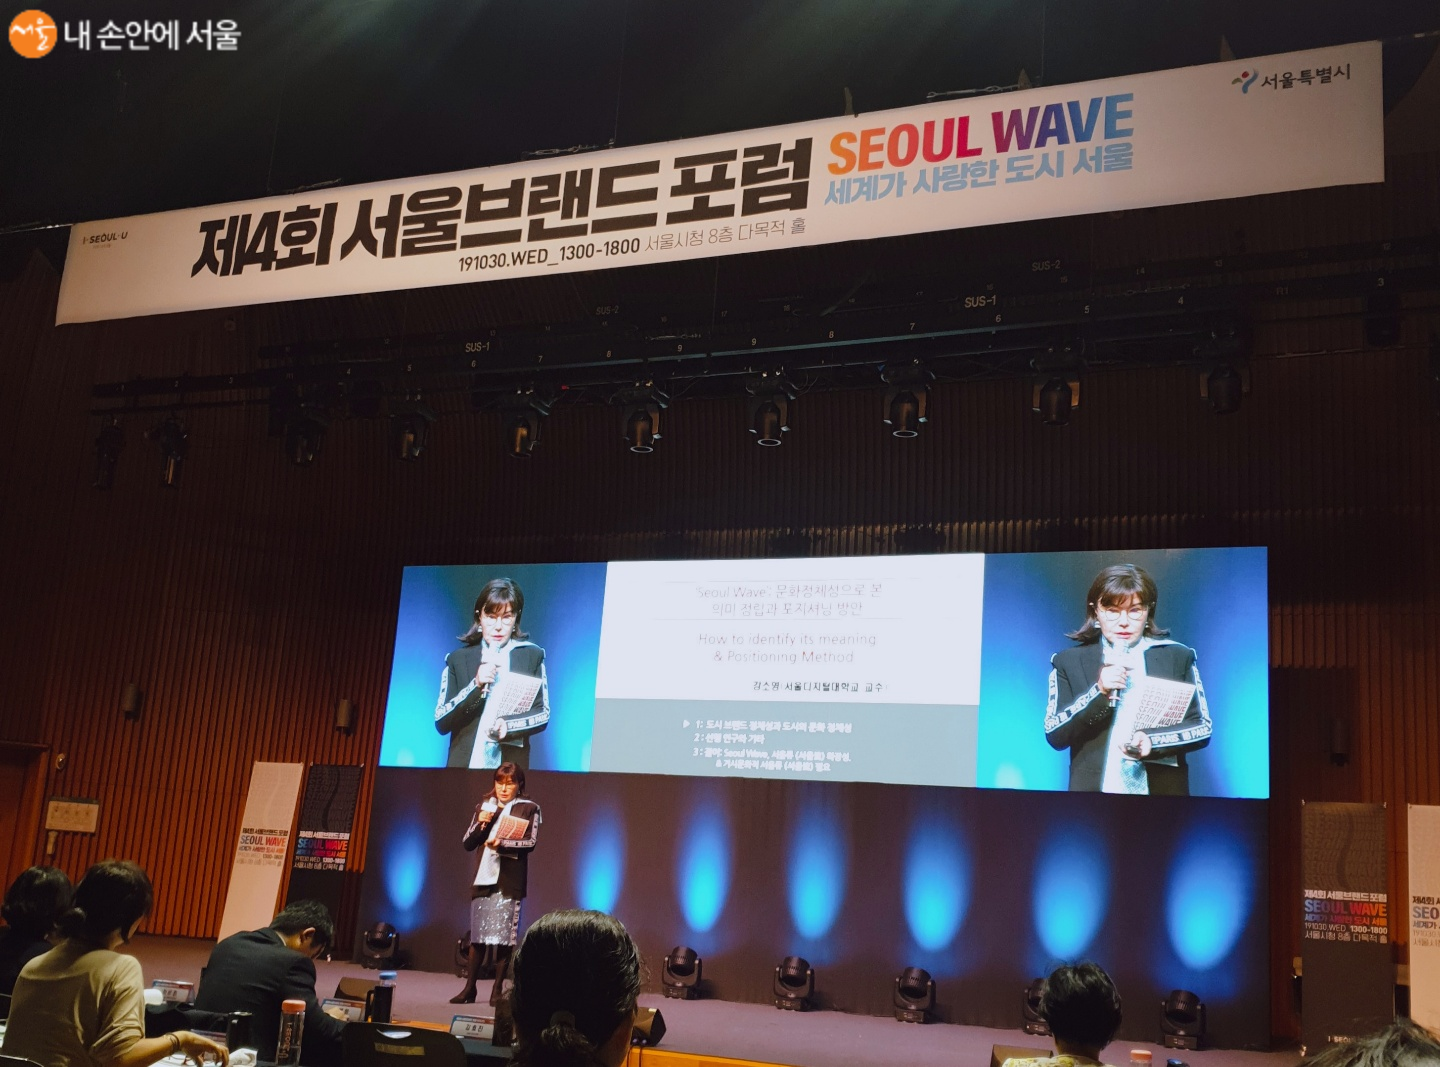 ‘문화 정체성으로 본 서울도시 브랜드 SEOUL WAVE’에 대해 발제 하는 강소영 교수 ©염윤경